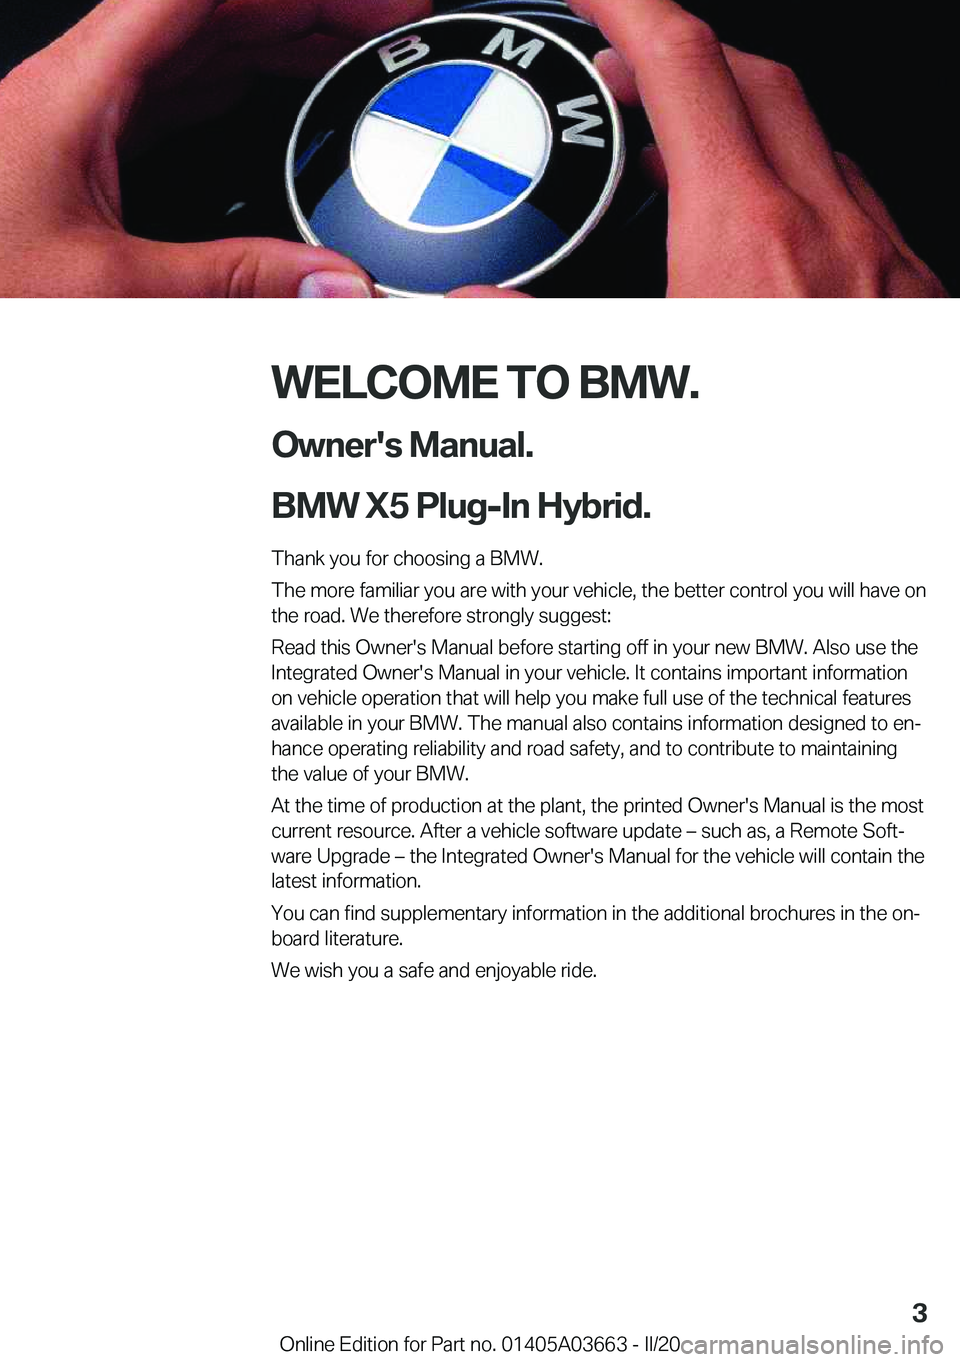 BMW X5 PLUG-IN HYBRID 2021  Owners Manual �W�E�L�C�O�M�E��T�O��B�M�W�.�O�w�n�e�r�'�s��M�a�n�u�a�l�.
�B�M�W��X�5��P�l�u�g�-�I�n��H�y�b�r�i�d�.
�T�h�a�n�k��y�o�u��f�o�r��c�h�o�o�s�i�n�g��a��B�M�W�.
�T�h�e��m�o�r�e��f�a�m�i�l�i�